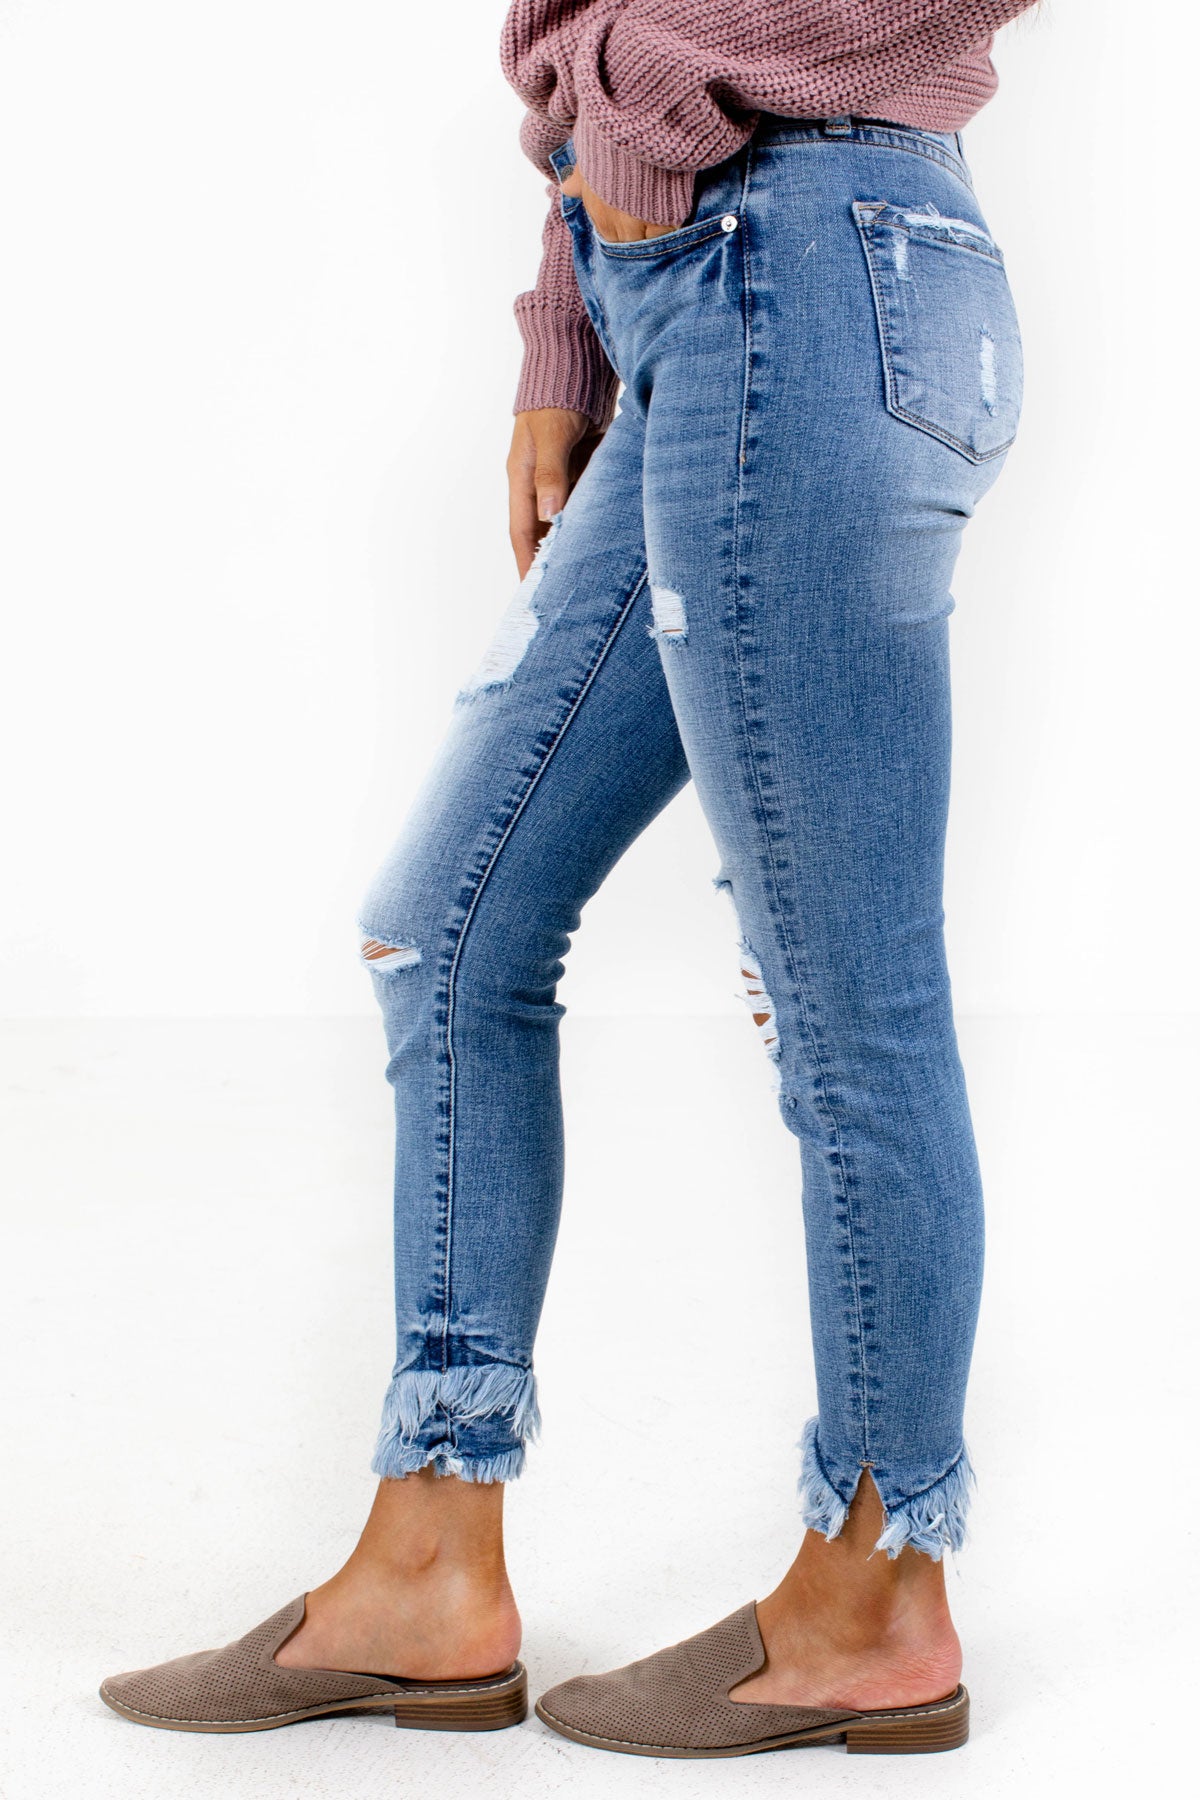 Women's Skinny KanCan Jeans